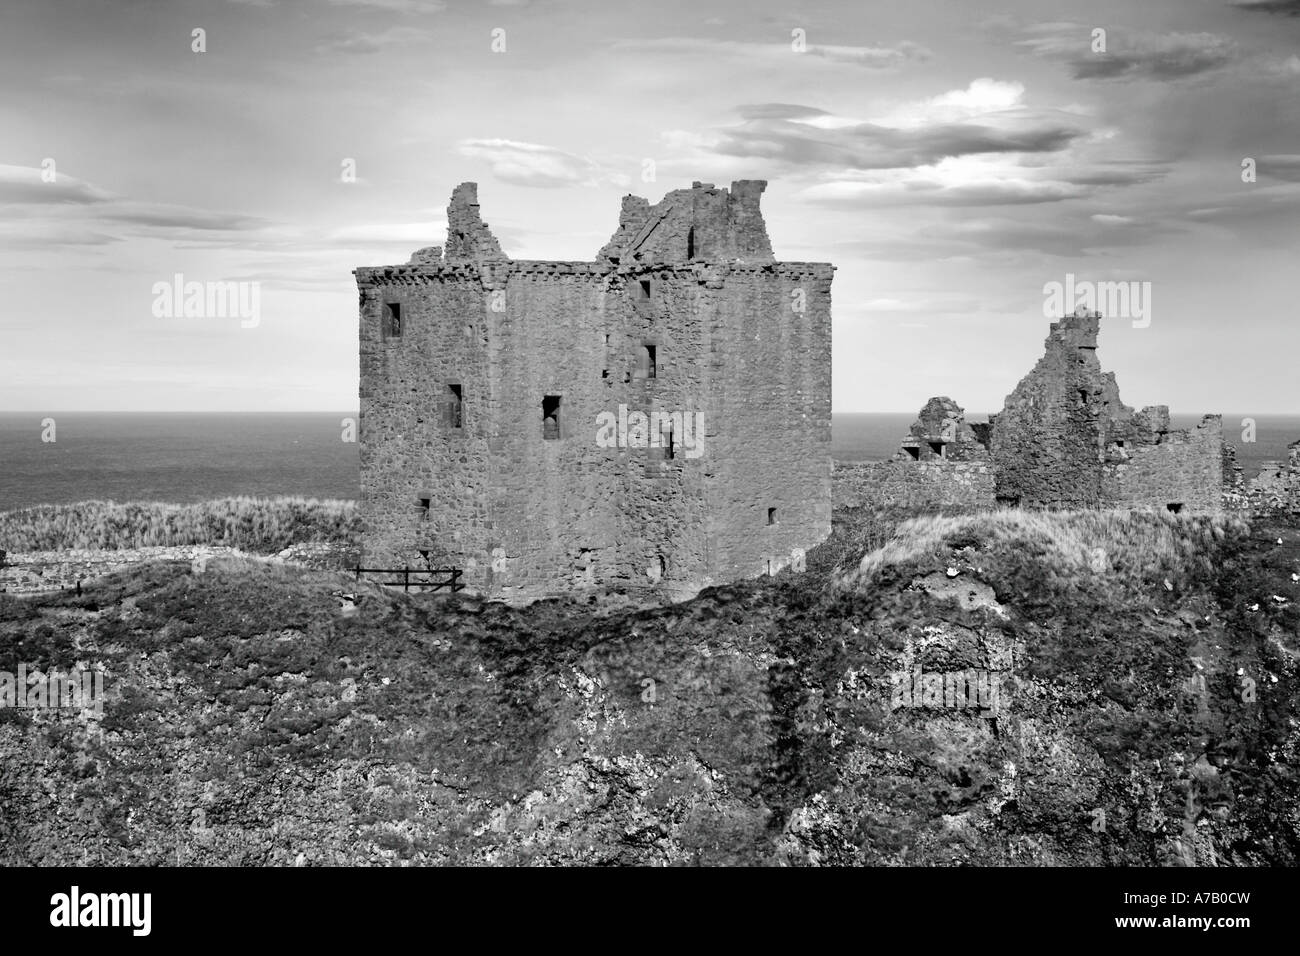 Dunnottar Castle - Stonehaven.  Eine zerstörte mittelalterliche Festung auf einem Felsvorsprung an der Nordost-Küste von Schottland, Vereinigtes Königreich Stockfoto